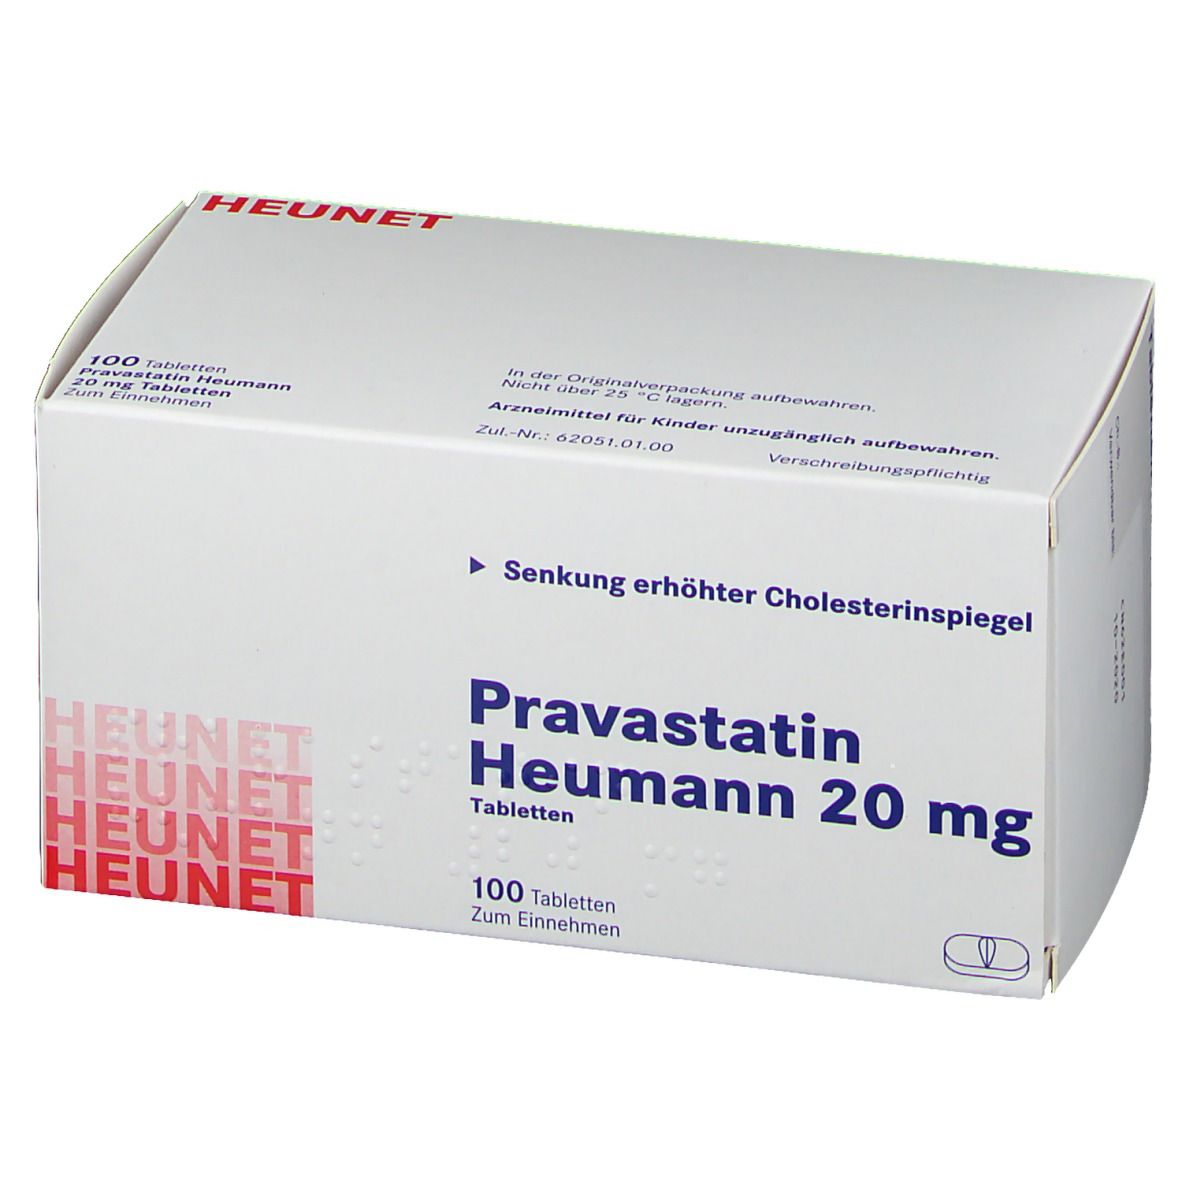 Pravastatin Heumann 20 mg